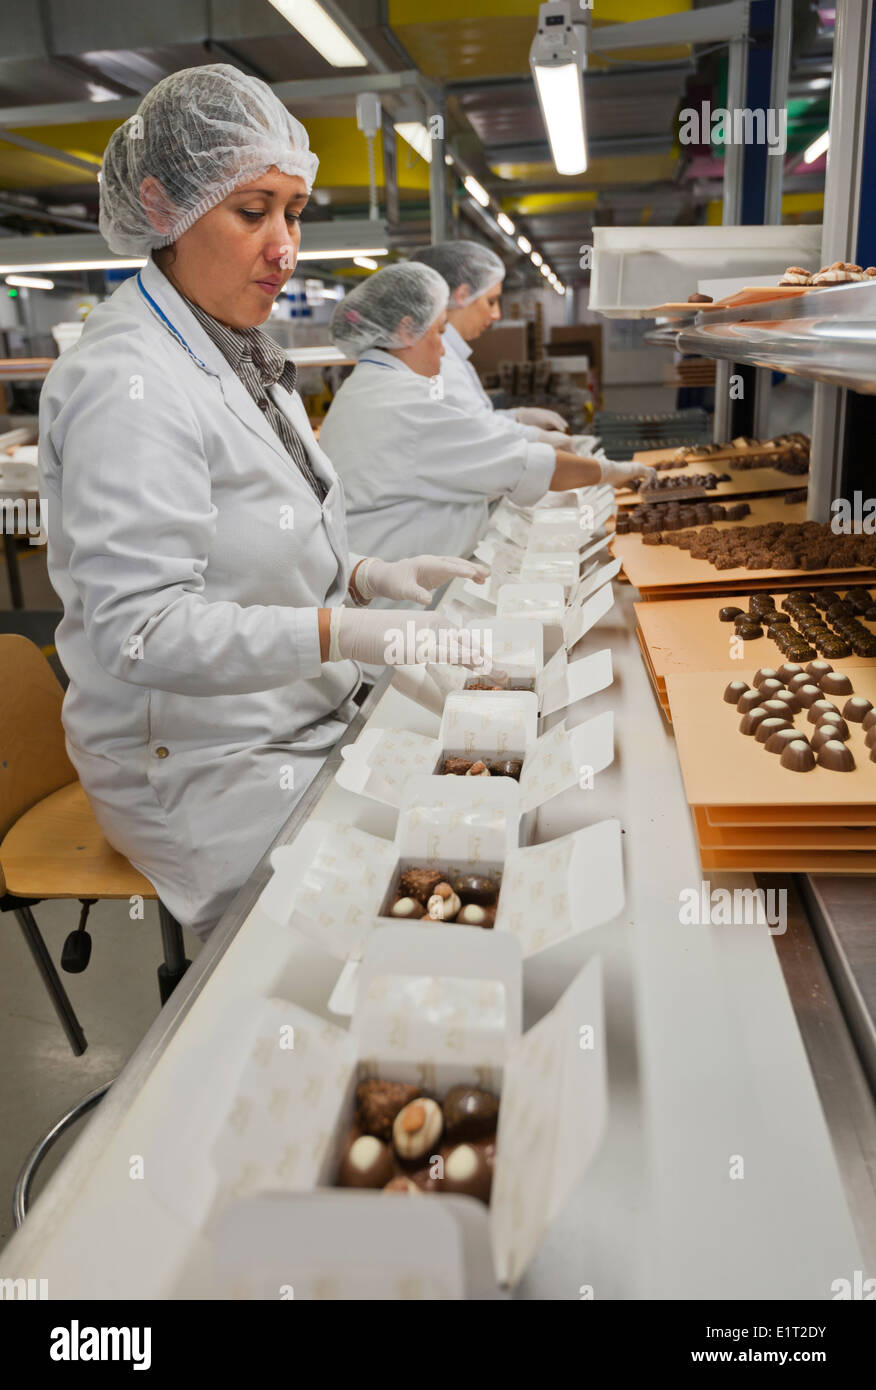 Les travailleurs de l'usine de chocolat suisse Lindt & Spruengli à Zurich / Kilchberg sont de triage et d'emballage de bonbons au chocolat. Banque D'Images